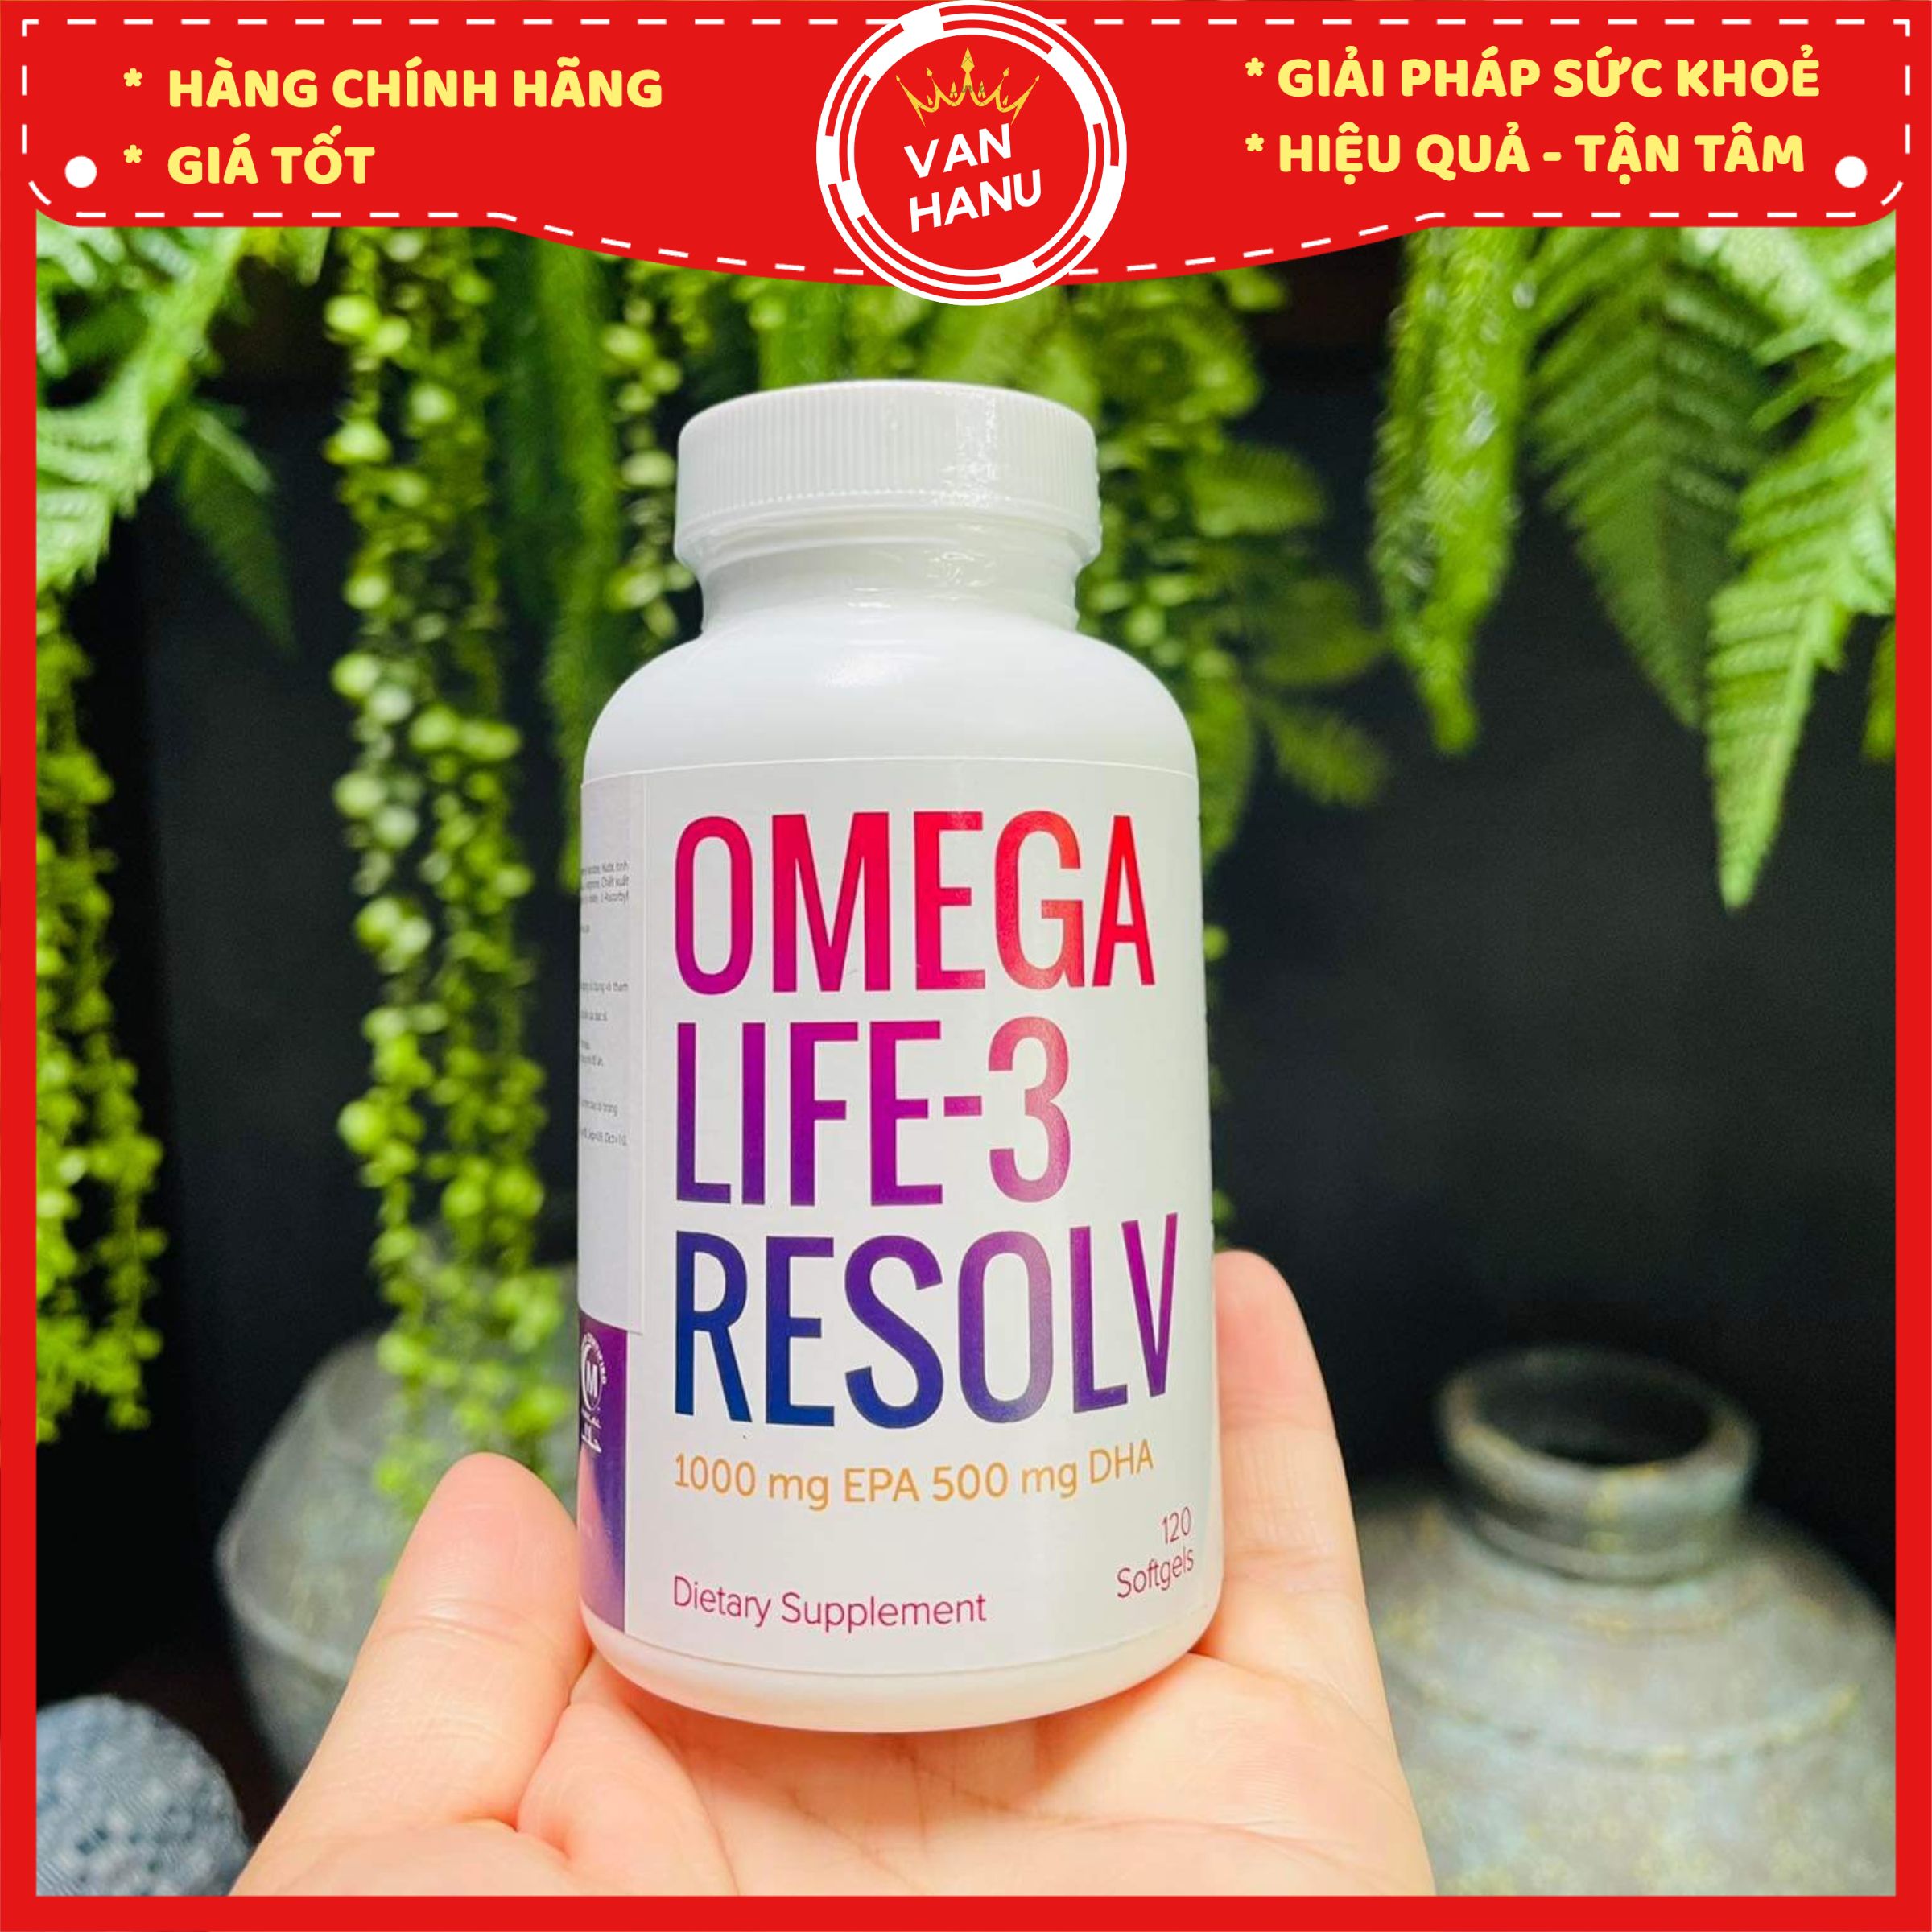 Omegalife 3 Resolv - Omega tinh khiết hàm lượng cao - Omega Cao Cấp